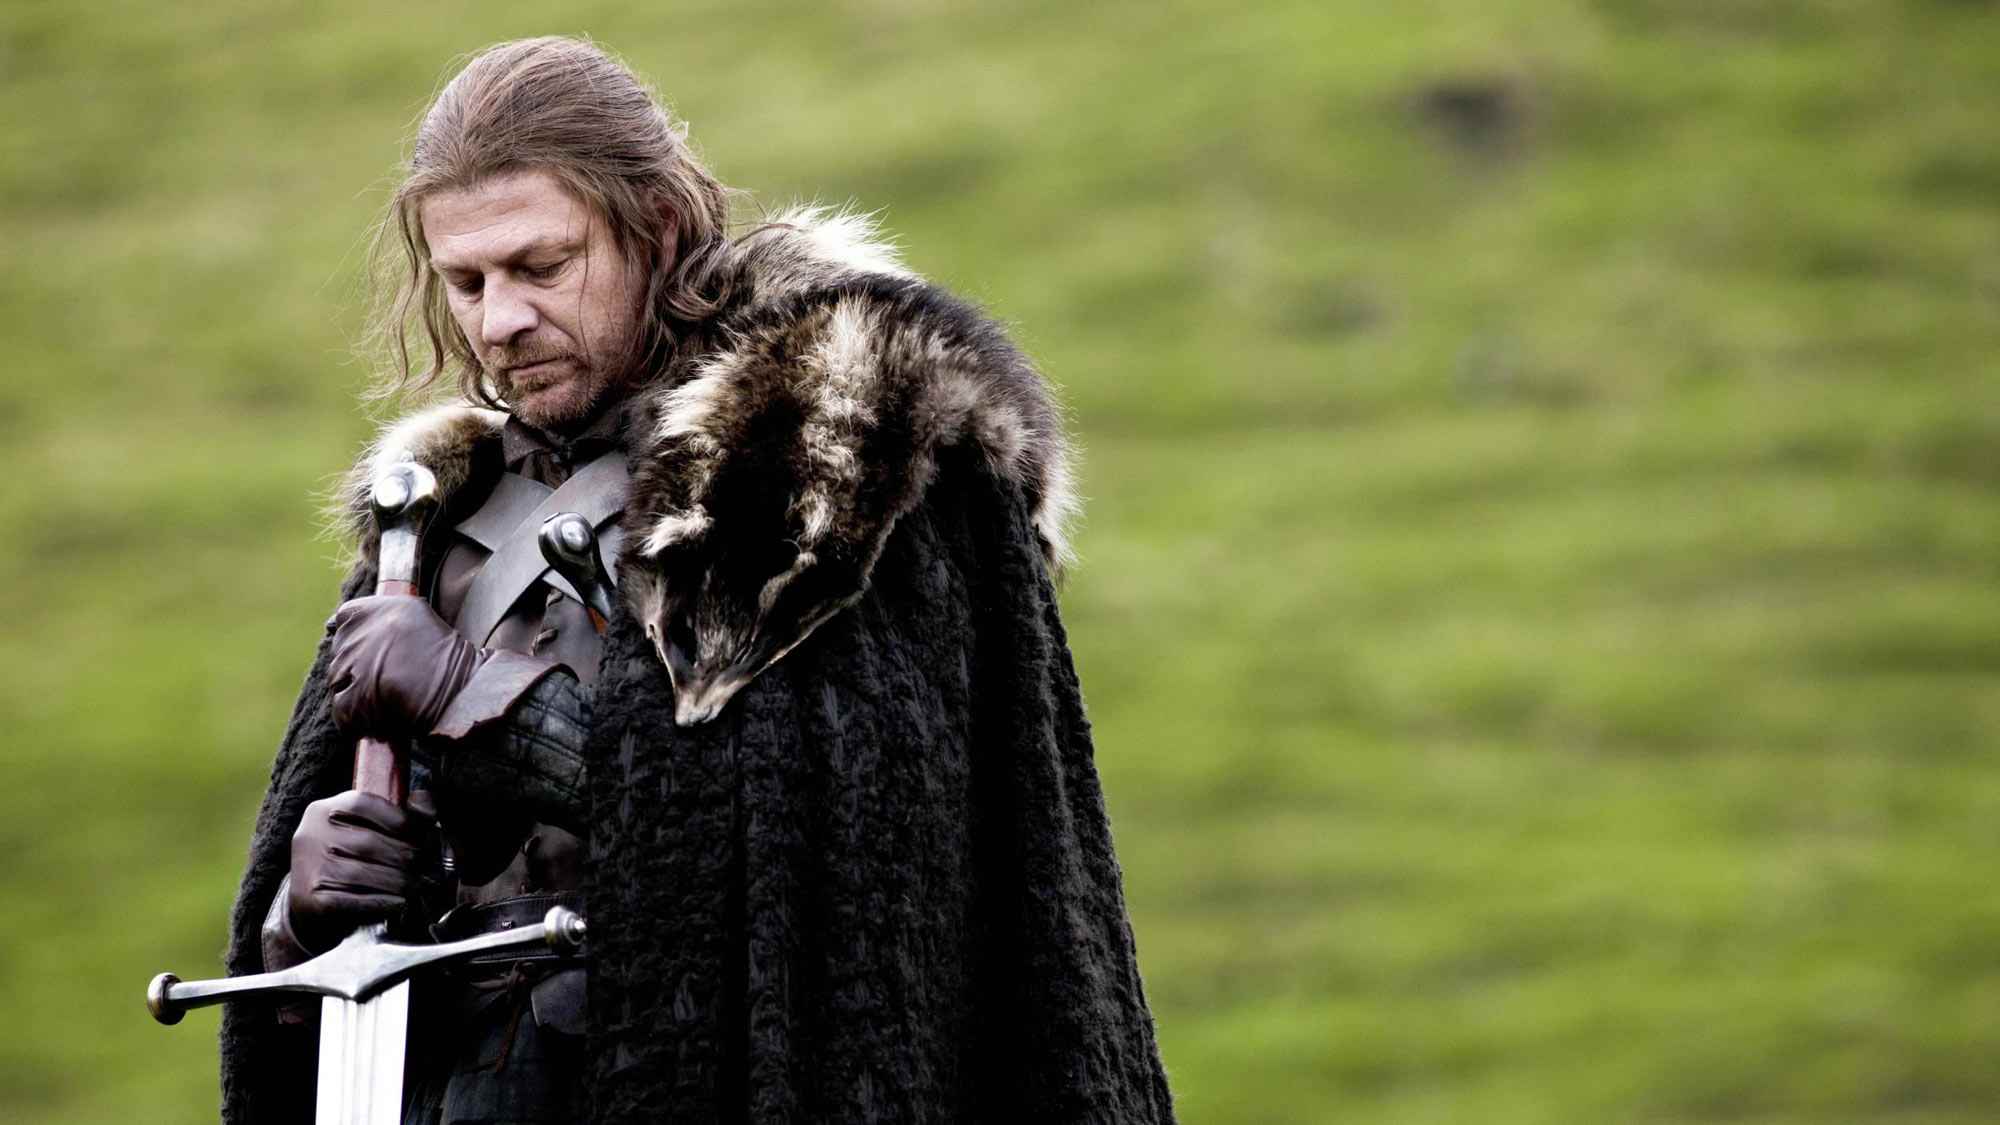 En iyi HBO Max şovları: Game of Thrones